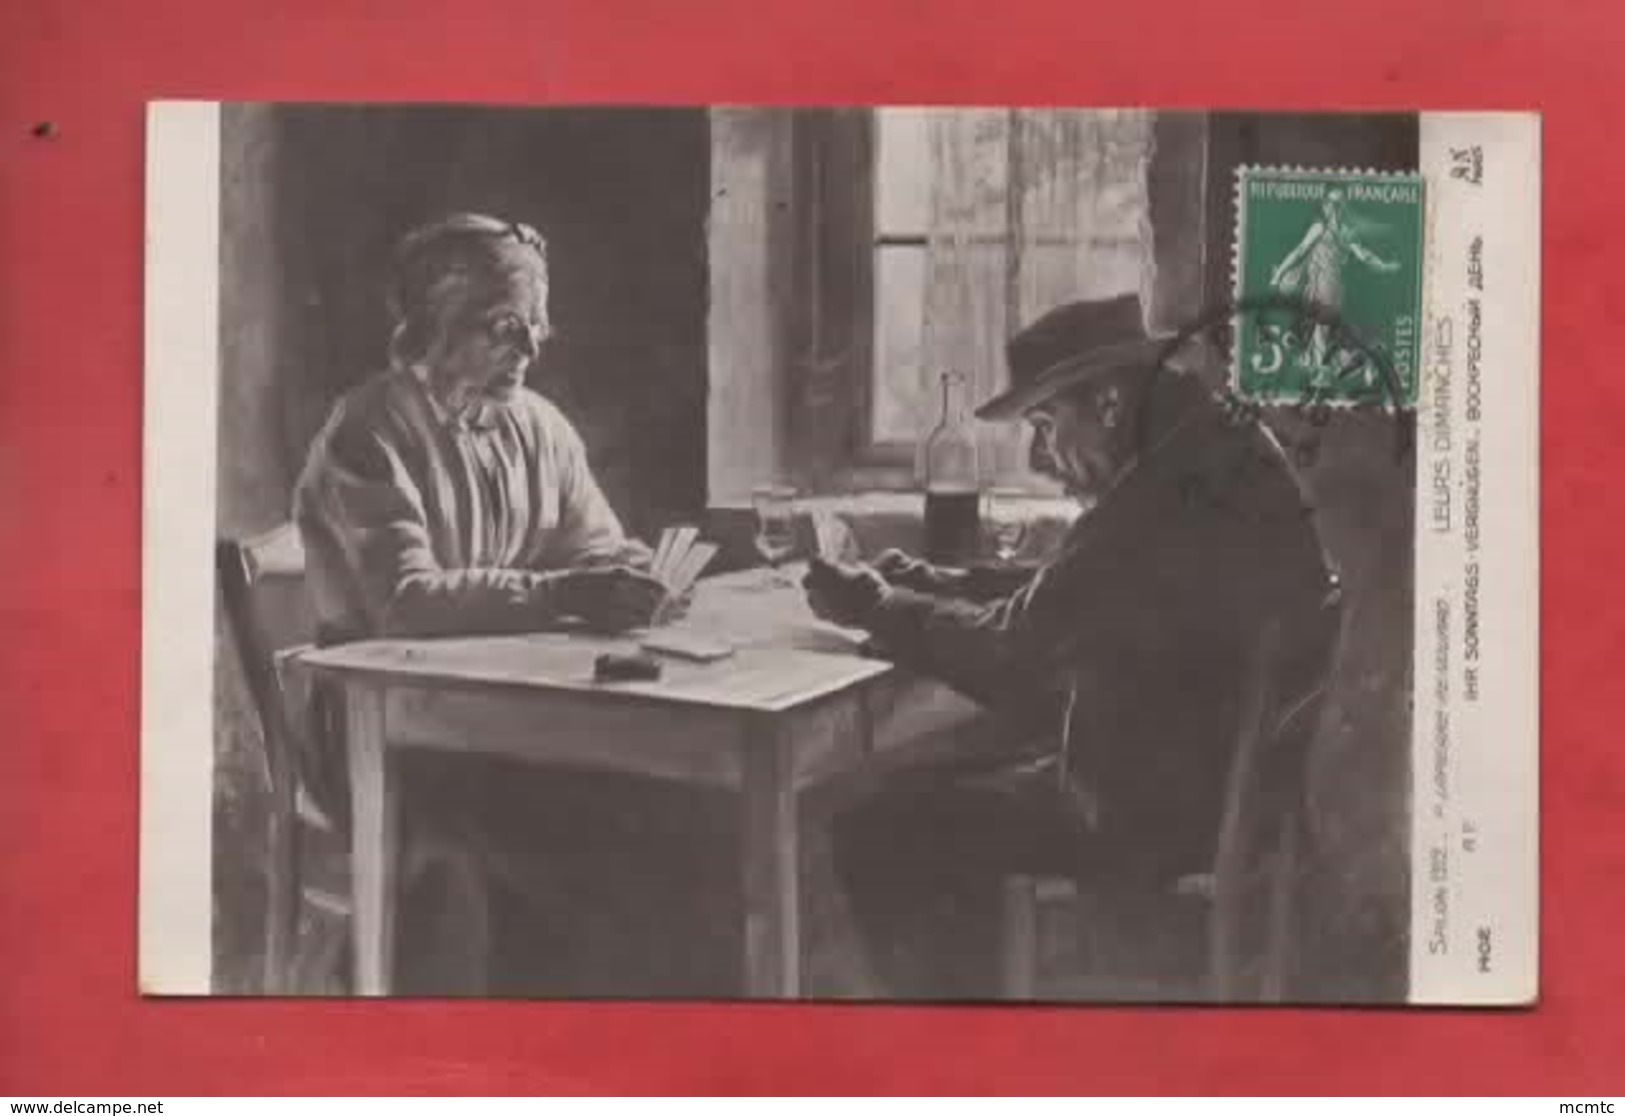 CPA -  Salons 1912 - P.Lapierre Renouard  -  Leurs Dimanches  -( Cartes à Jouer , Jeu De Cartes ) - Speelkaarten